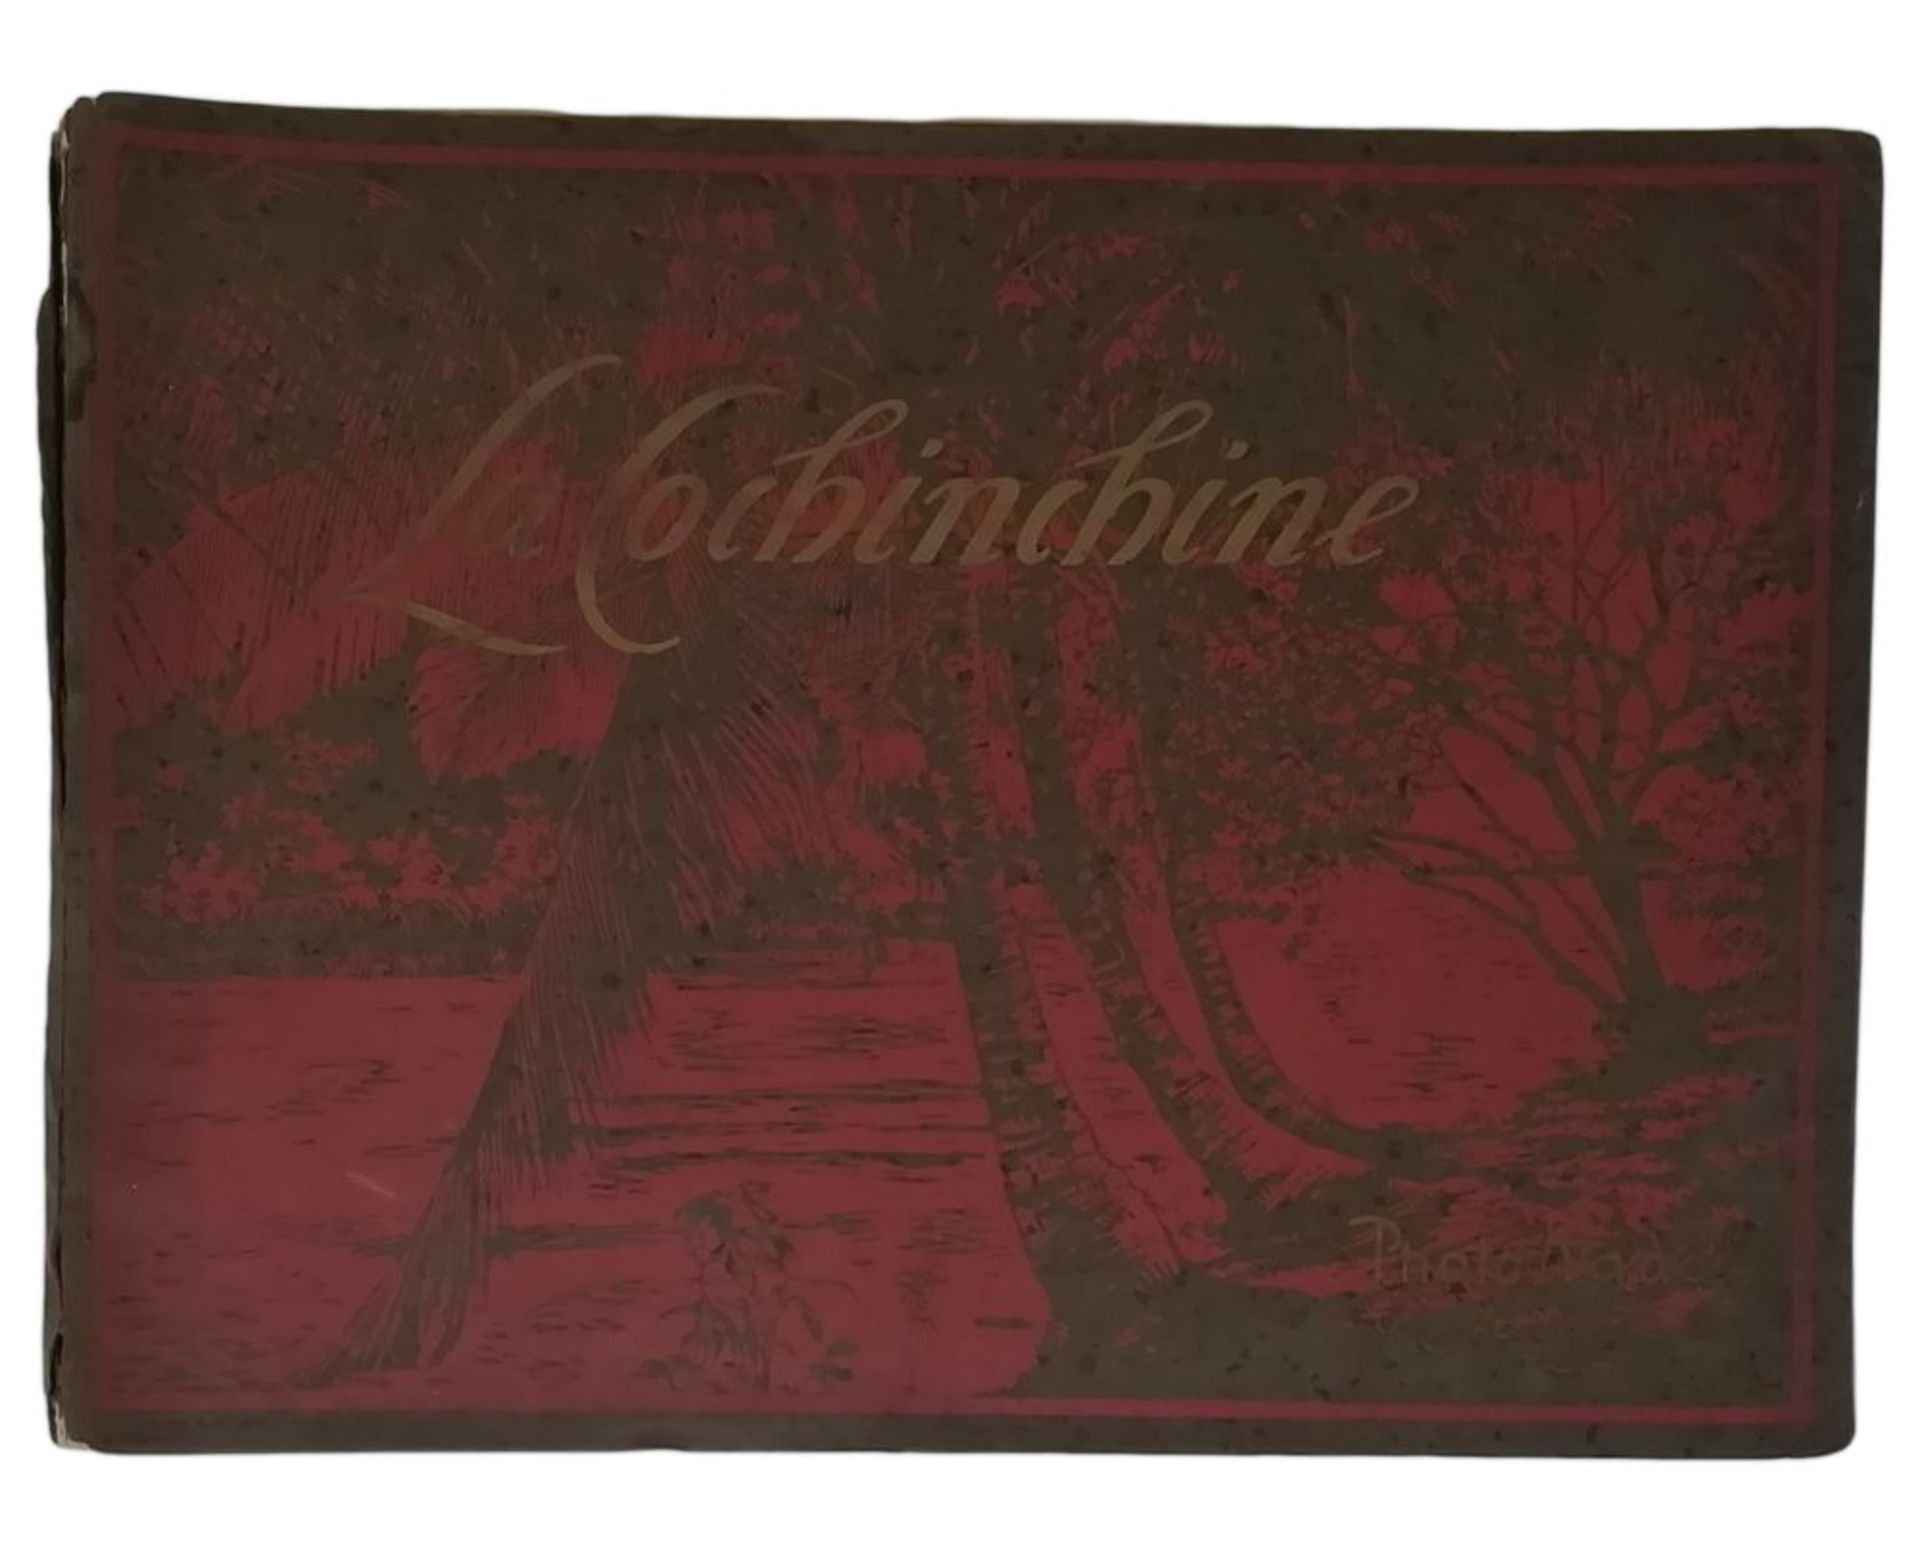 LA COCHINCHINE - – illustrated album with 456 engravings (Album Général illustré [...]